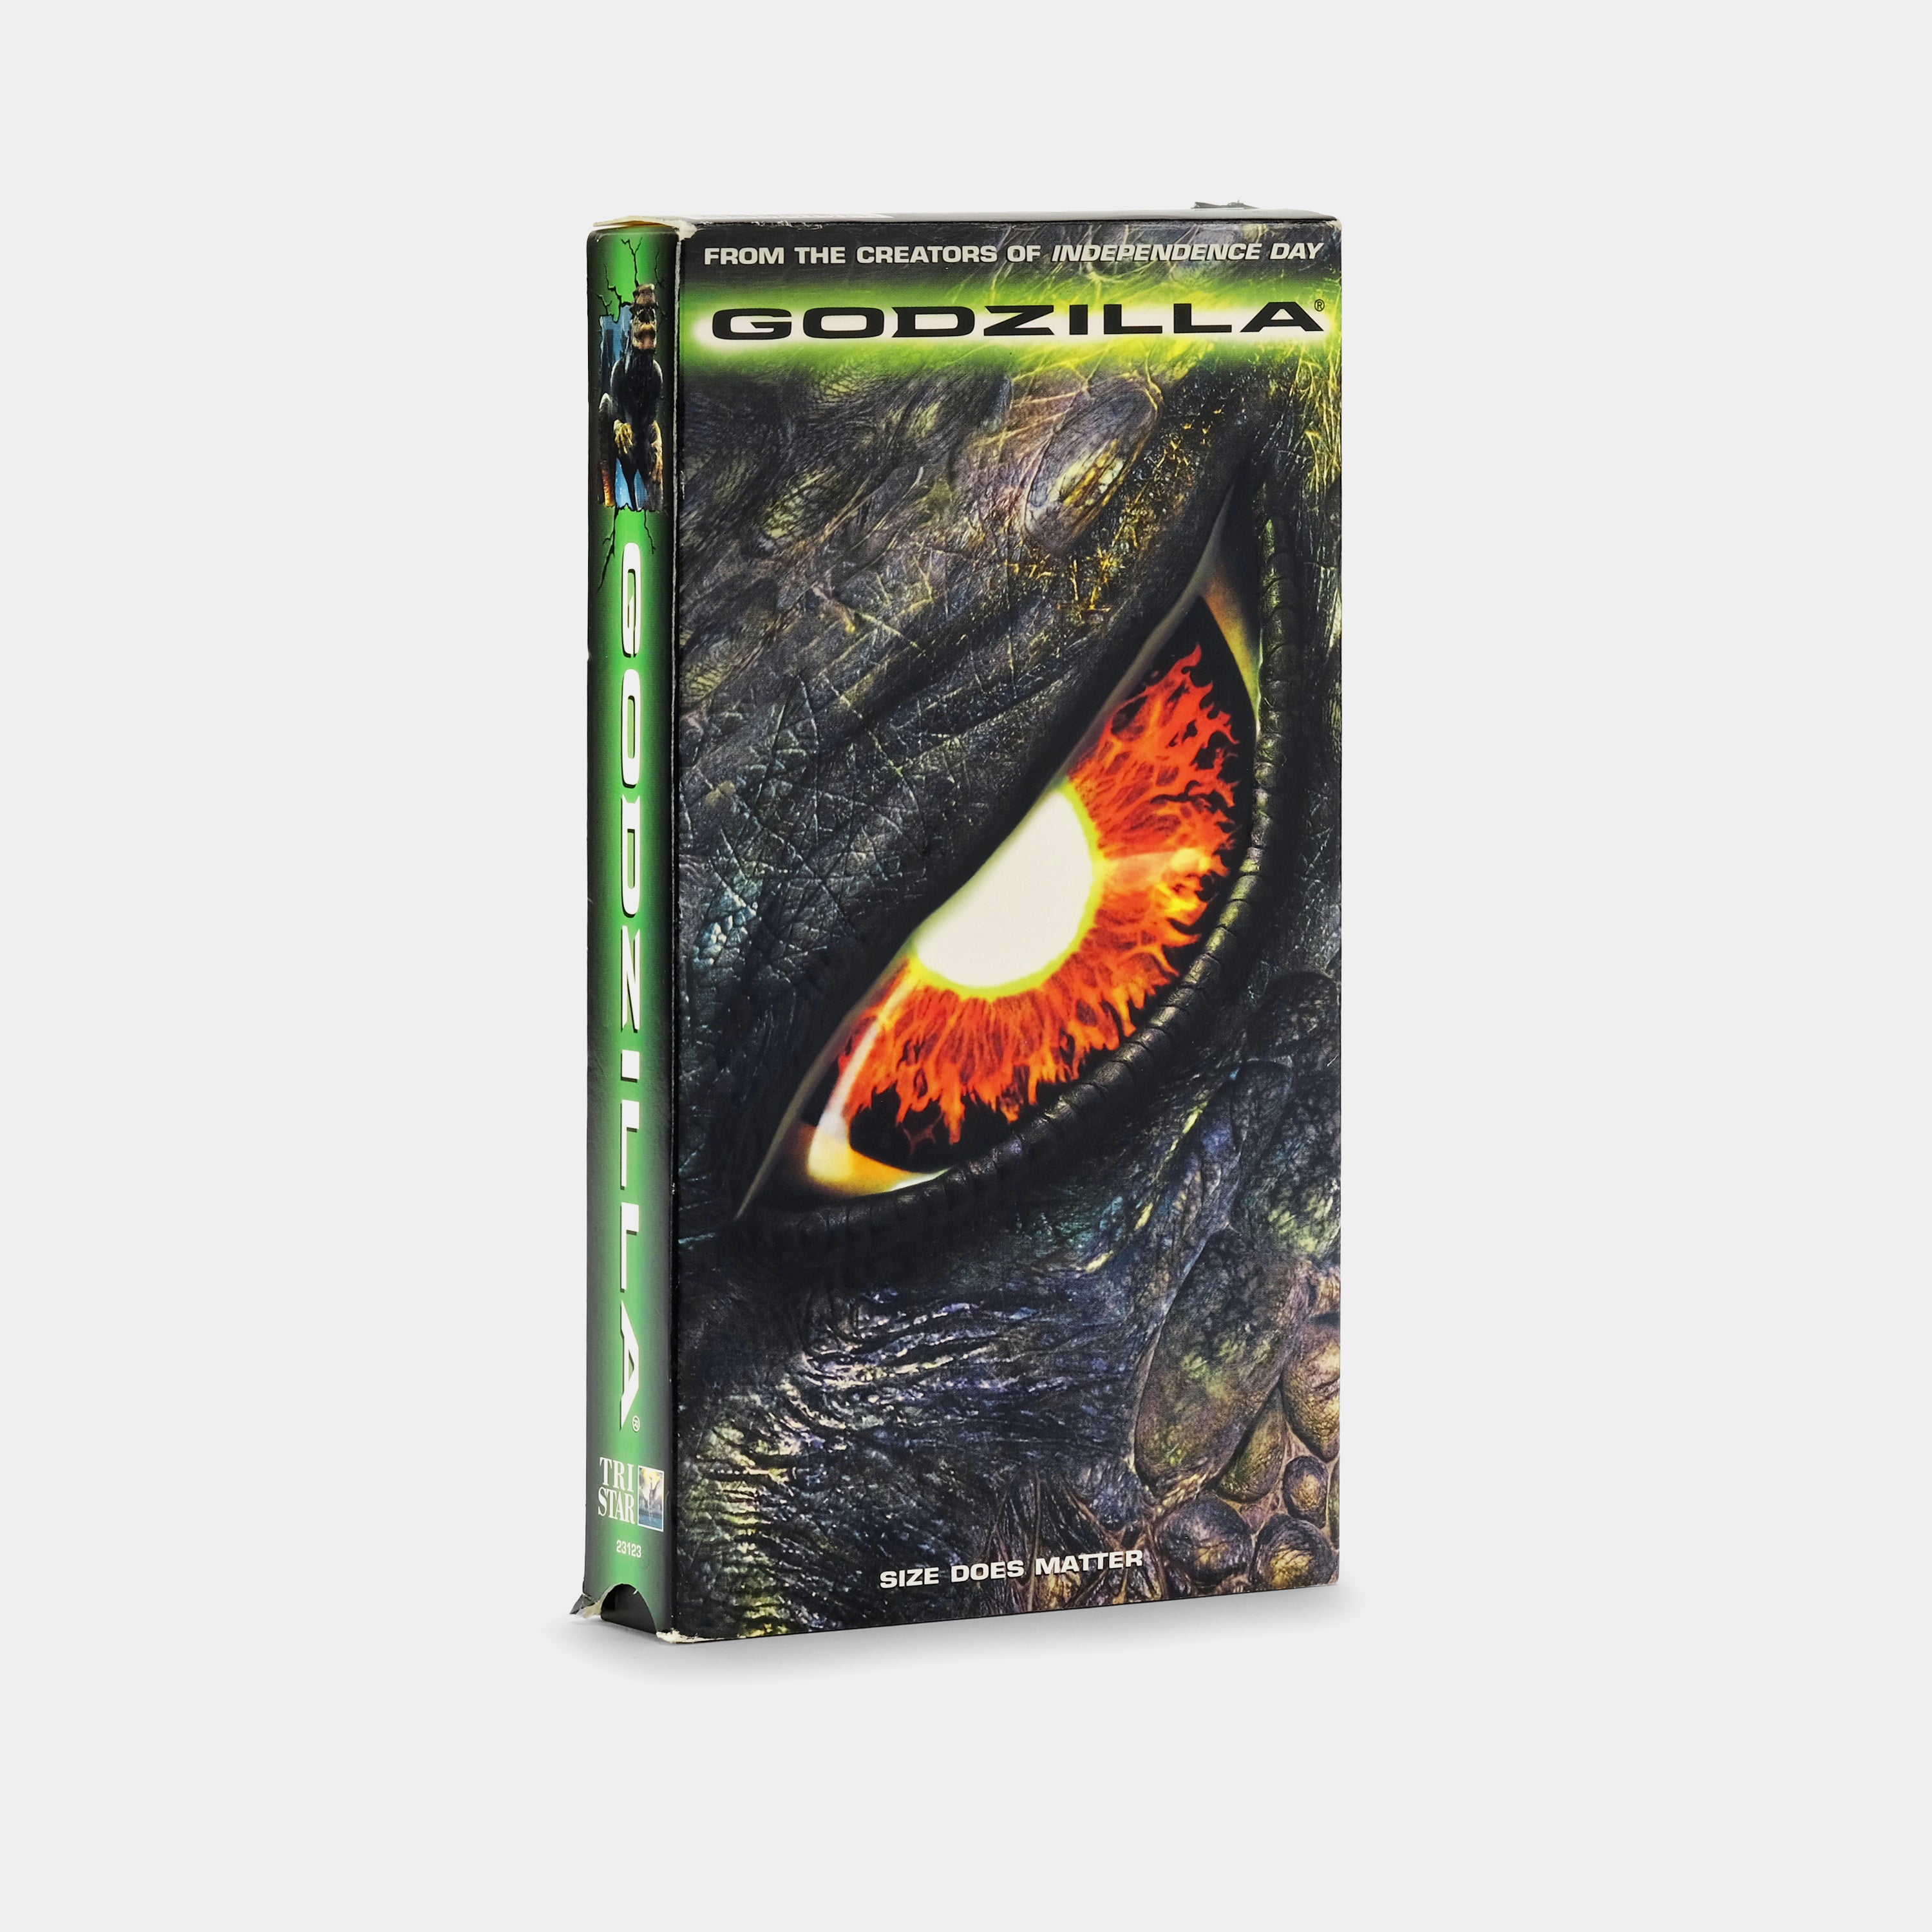 Godzilla VHS Tape